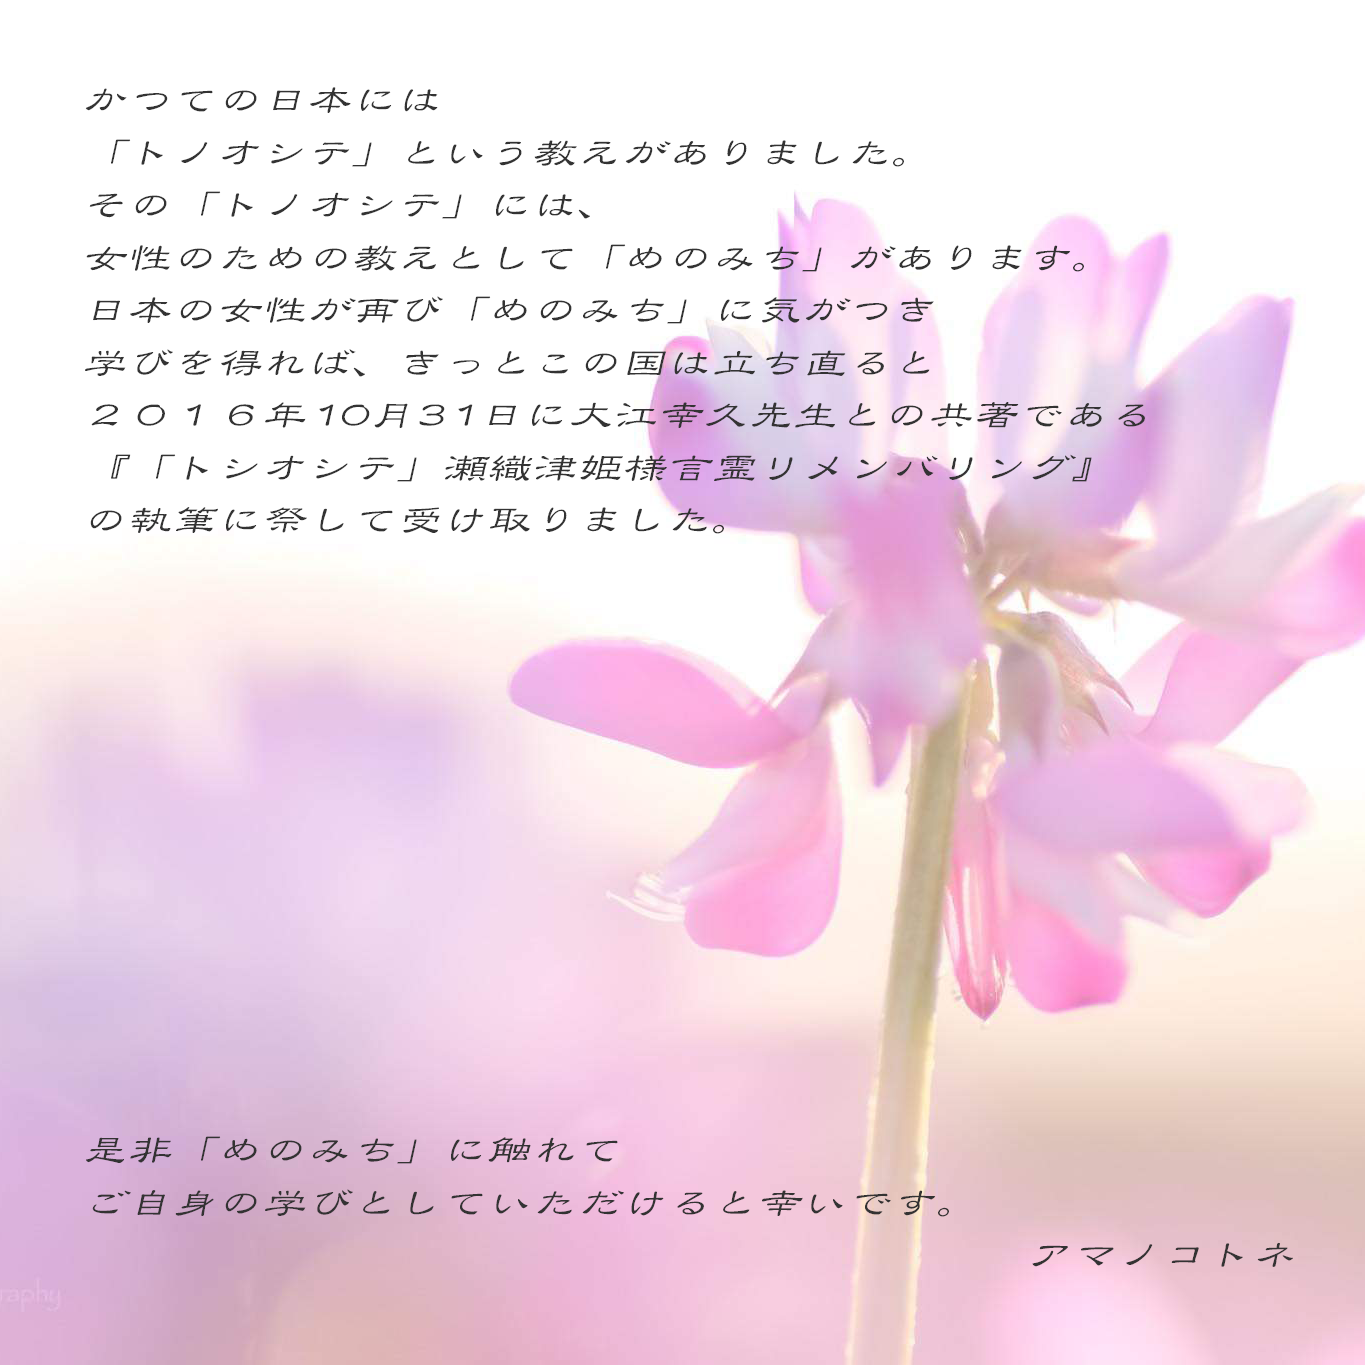 めのみち について | かつての日本には「トノオシテ」という教えがありました。その「トノオシテ」には、女性のための教えとして「めのみち」があります。日本女性が再び「めのみち」に気がつき学びを得れば、きっとこの国は立ち直ると二〇一六年十月三十一日に大江幸久先生との共著である『「トノオシテ」瀬織津姫様言霊リメンバリング』の執筆に際して受け取りました。是非「めのみち」に触れてご自分の学びとしていただけると幸いです。 アマノコトネ